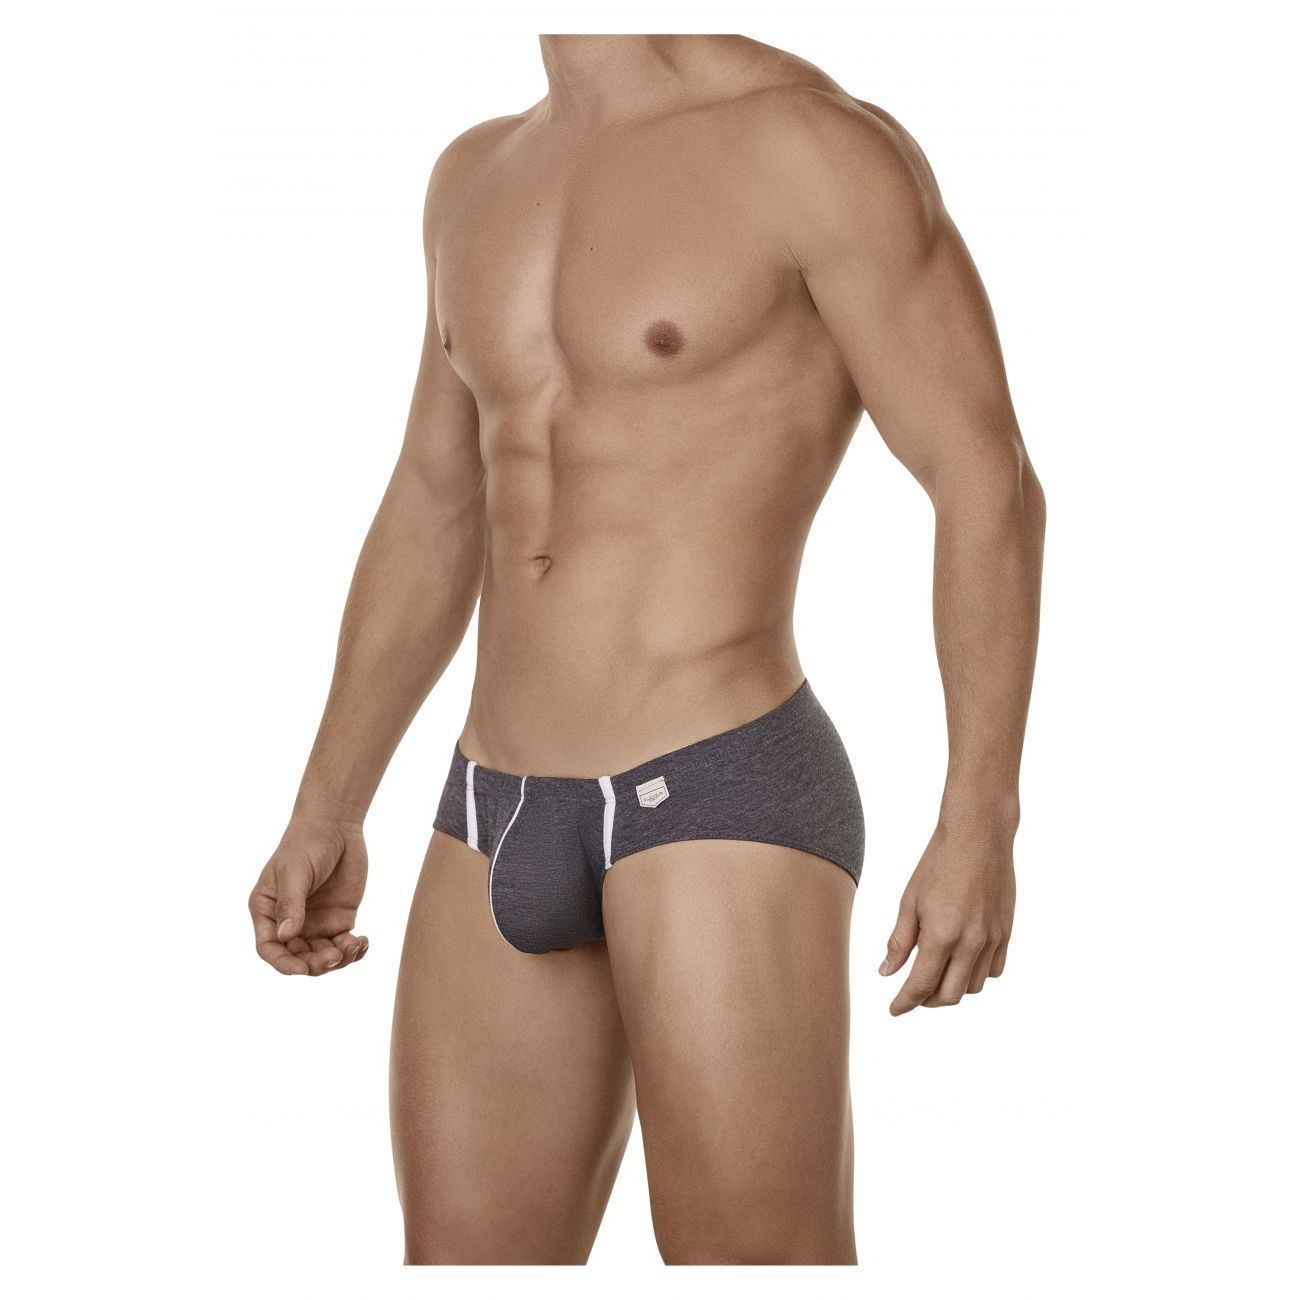 Трусы мужские Clever Masculine Underwear 5026 серые S